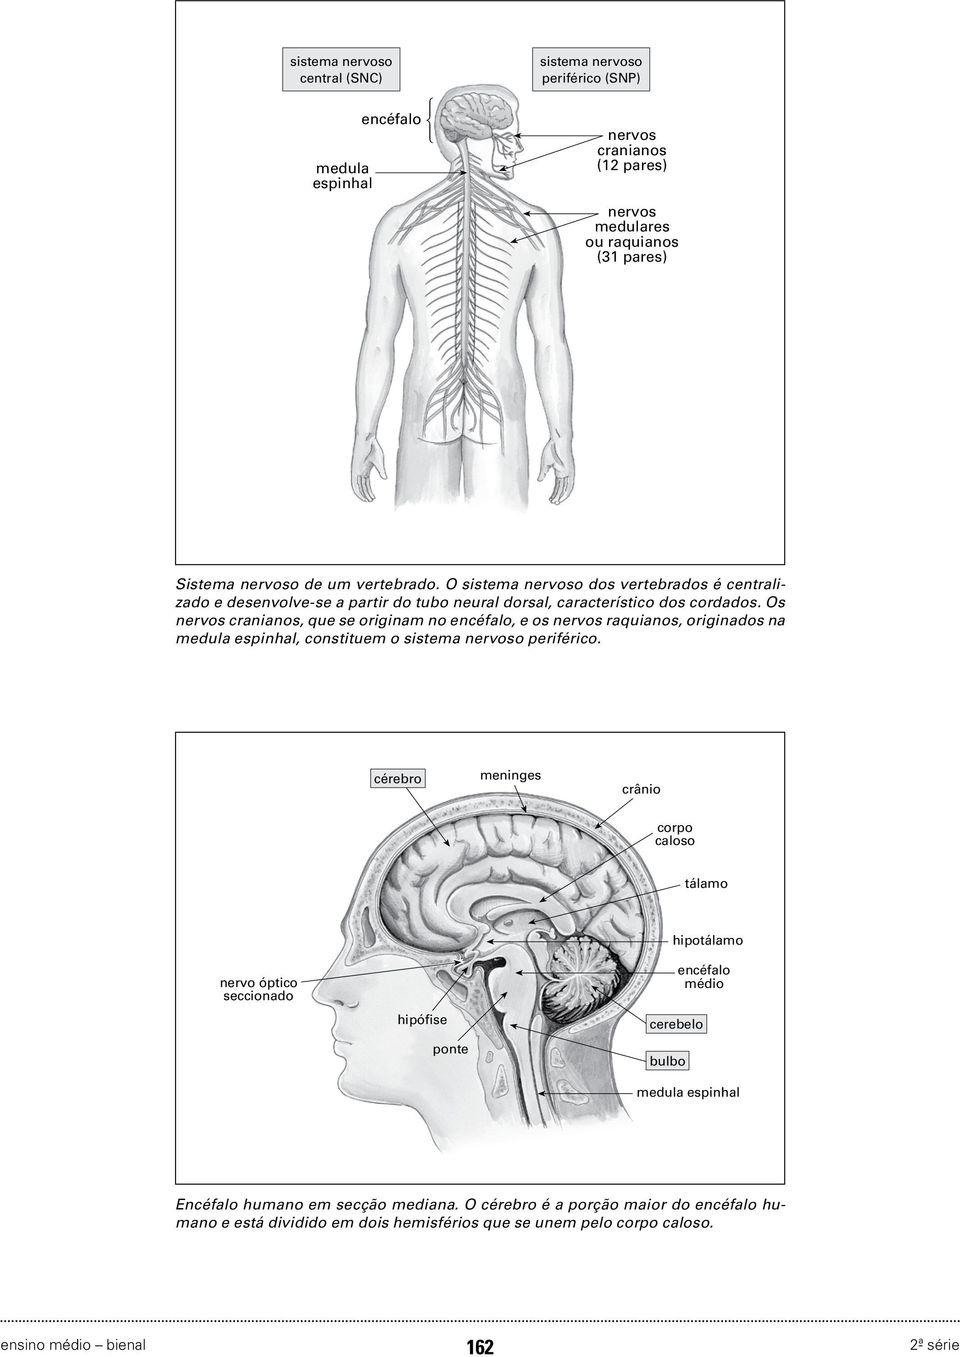 Os nervos cranianos, que se originam no encéfalo, e os nervos raquianos, originados na medula espinhal, constituem o sistema nervoso periférico.